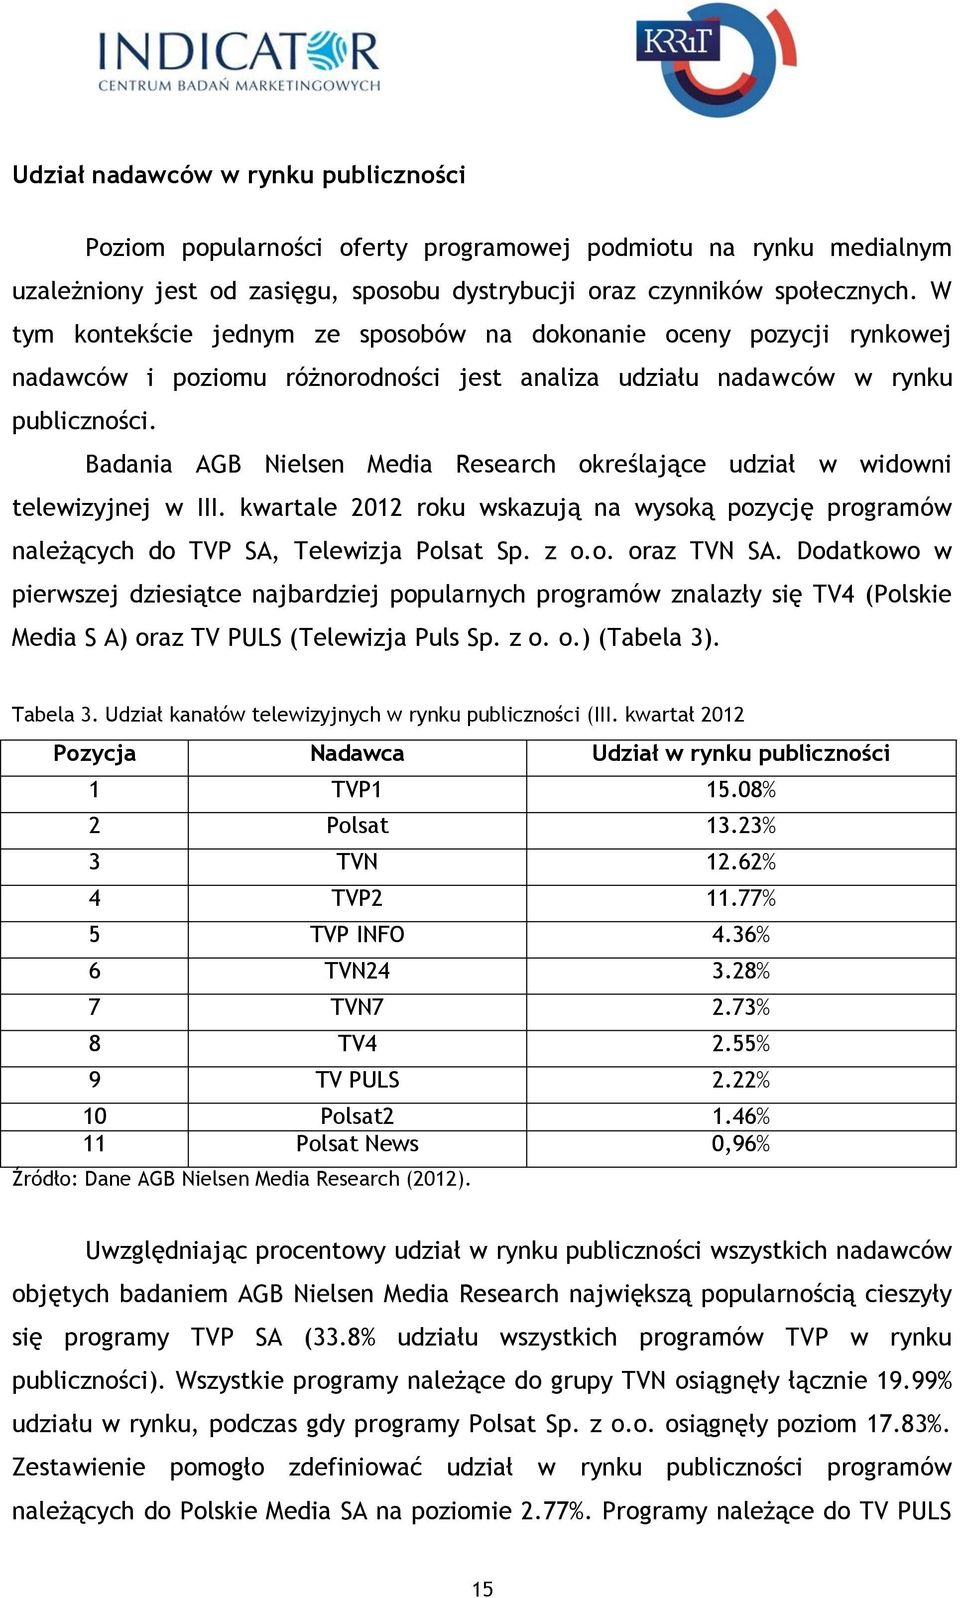 Badania AGB Nielsen Media Research określające udział w widowni telewizyjnej w III. kwartale 2012 roku wskazują na wysoką pozycję programów należących do TVP SA, Telewizja Polsat Sp. z o.o. oraz TVN SA.